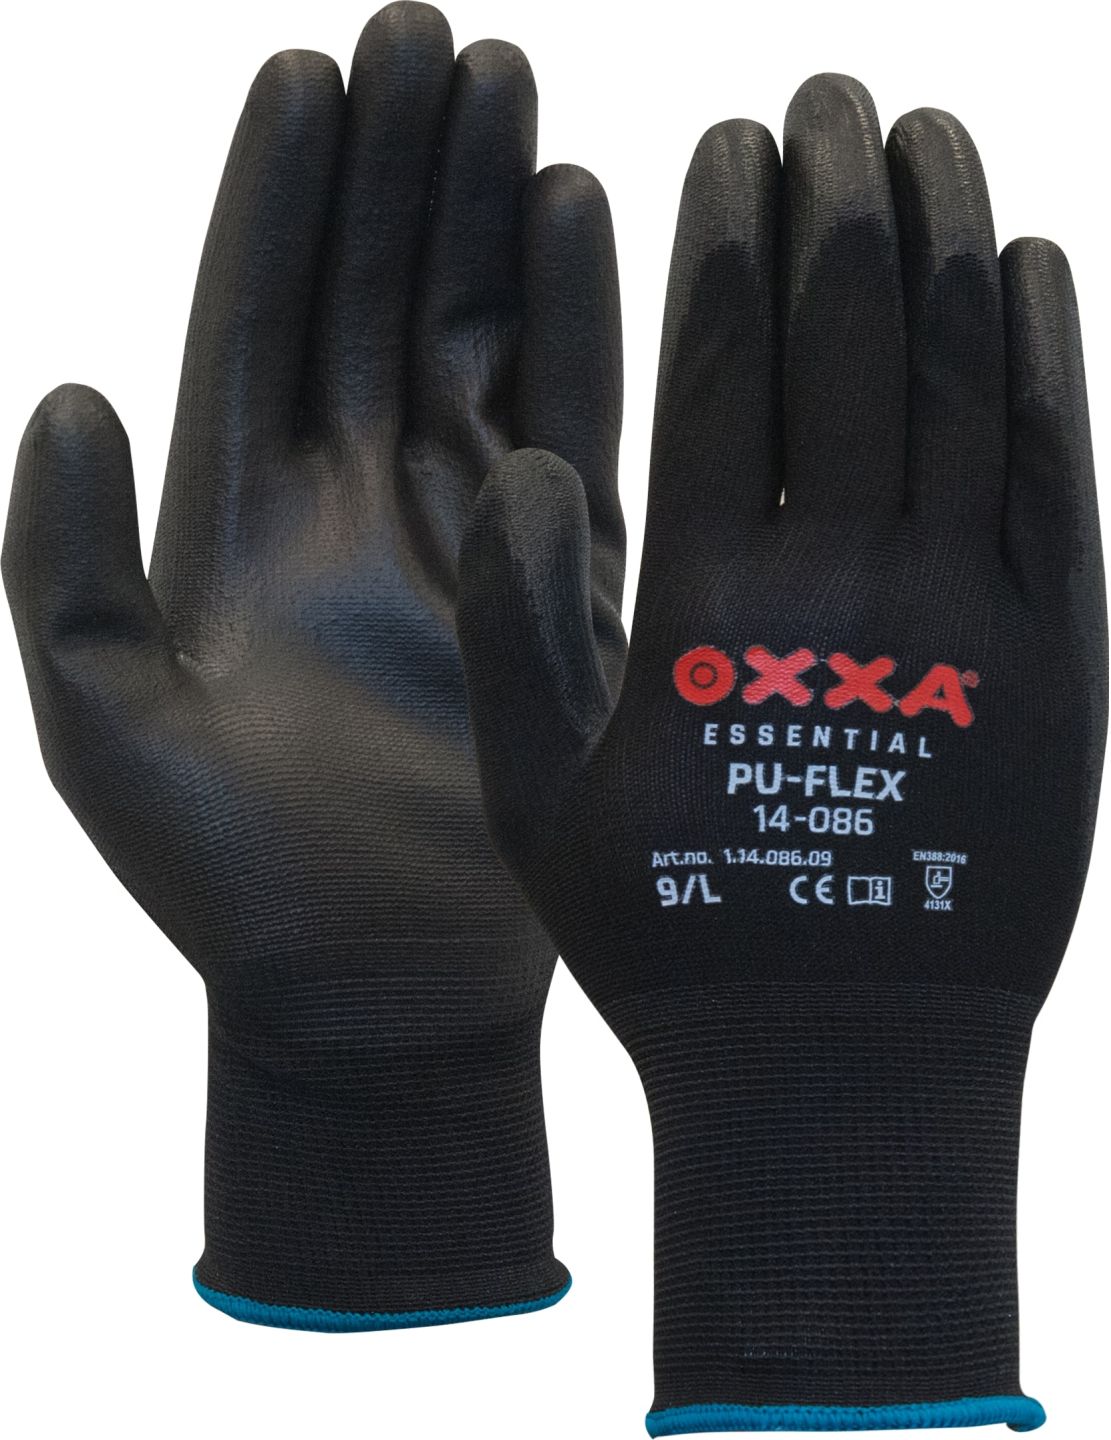 OXXA PU-Flex 14-086 werkhandschoenen